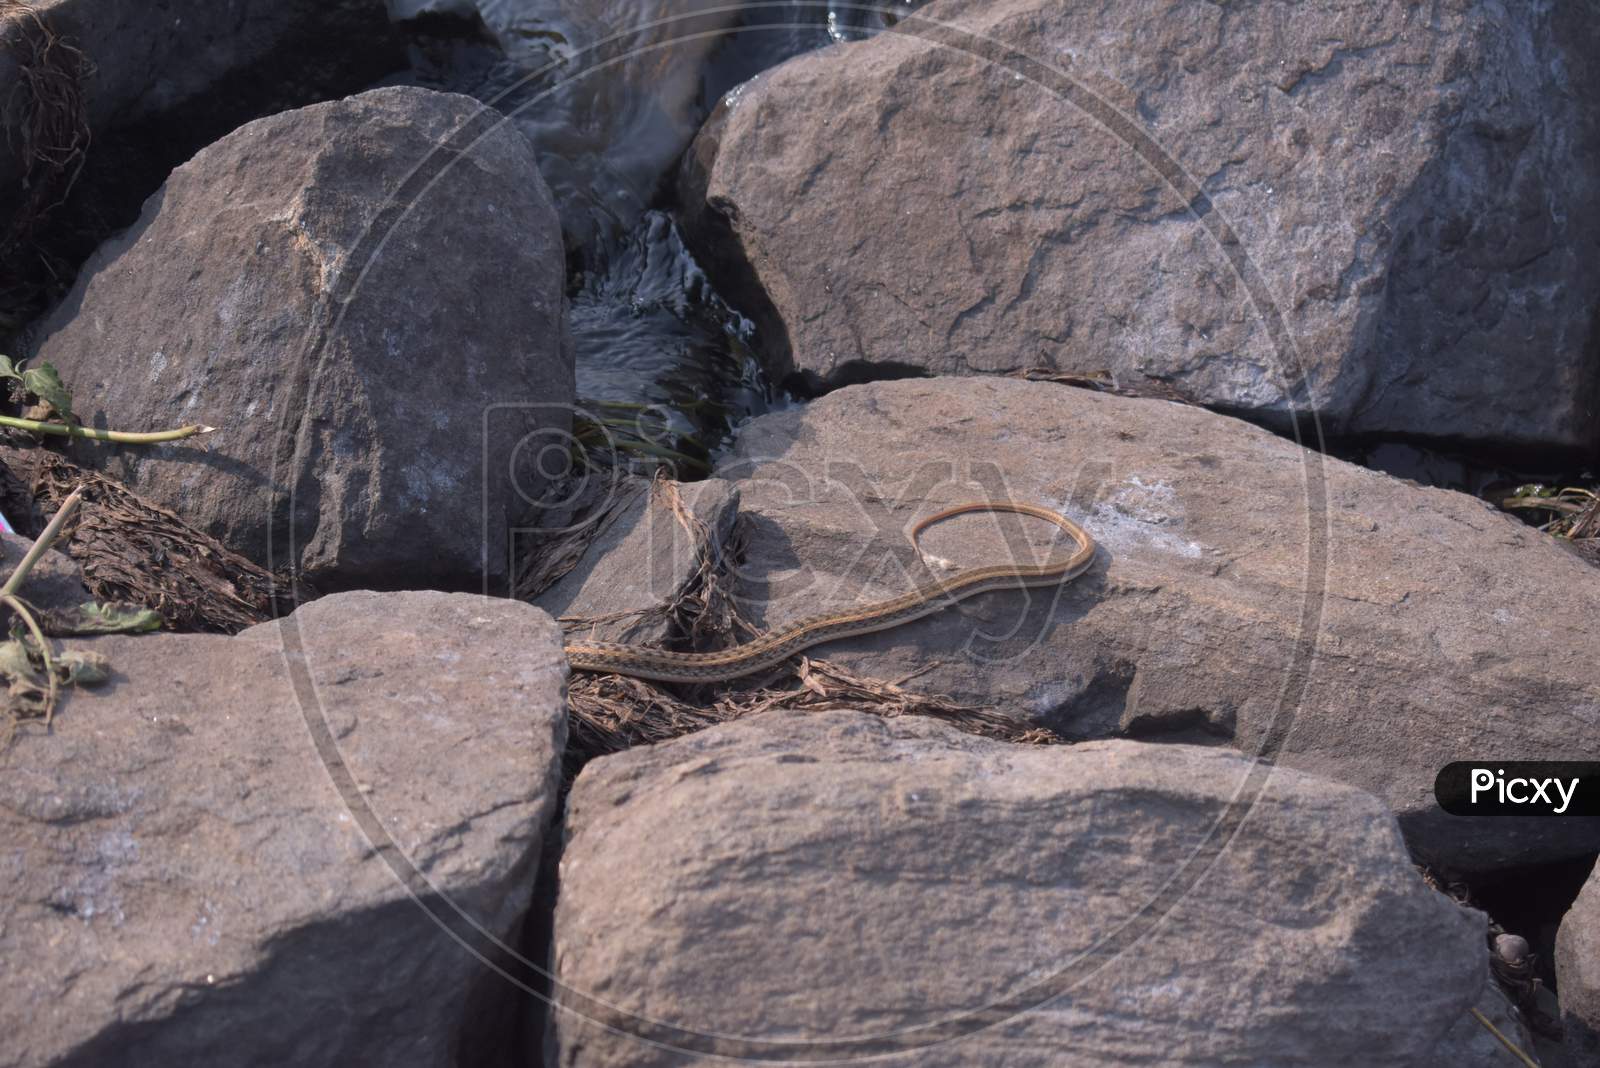 Poisonous Snake Hiding Inside A Rock Near A Lake